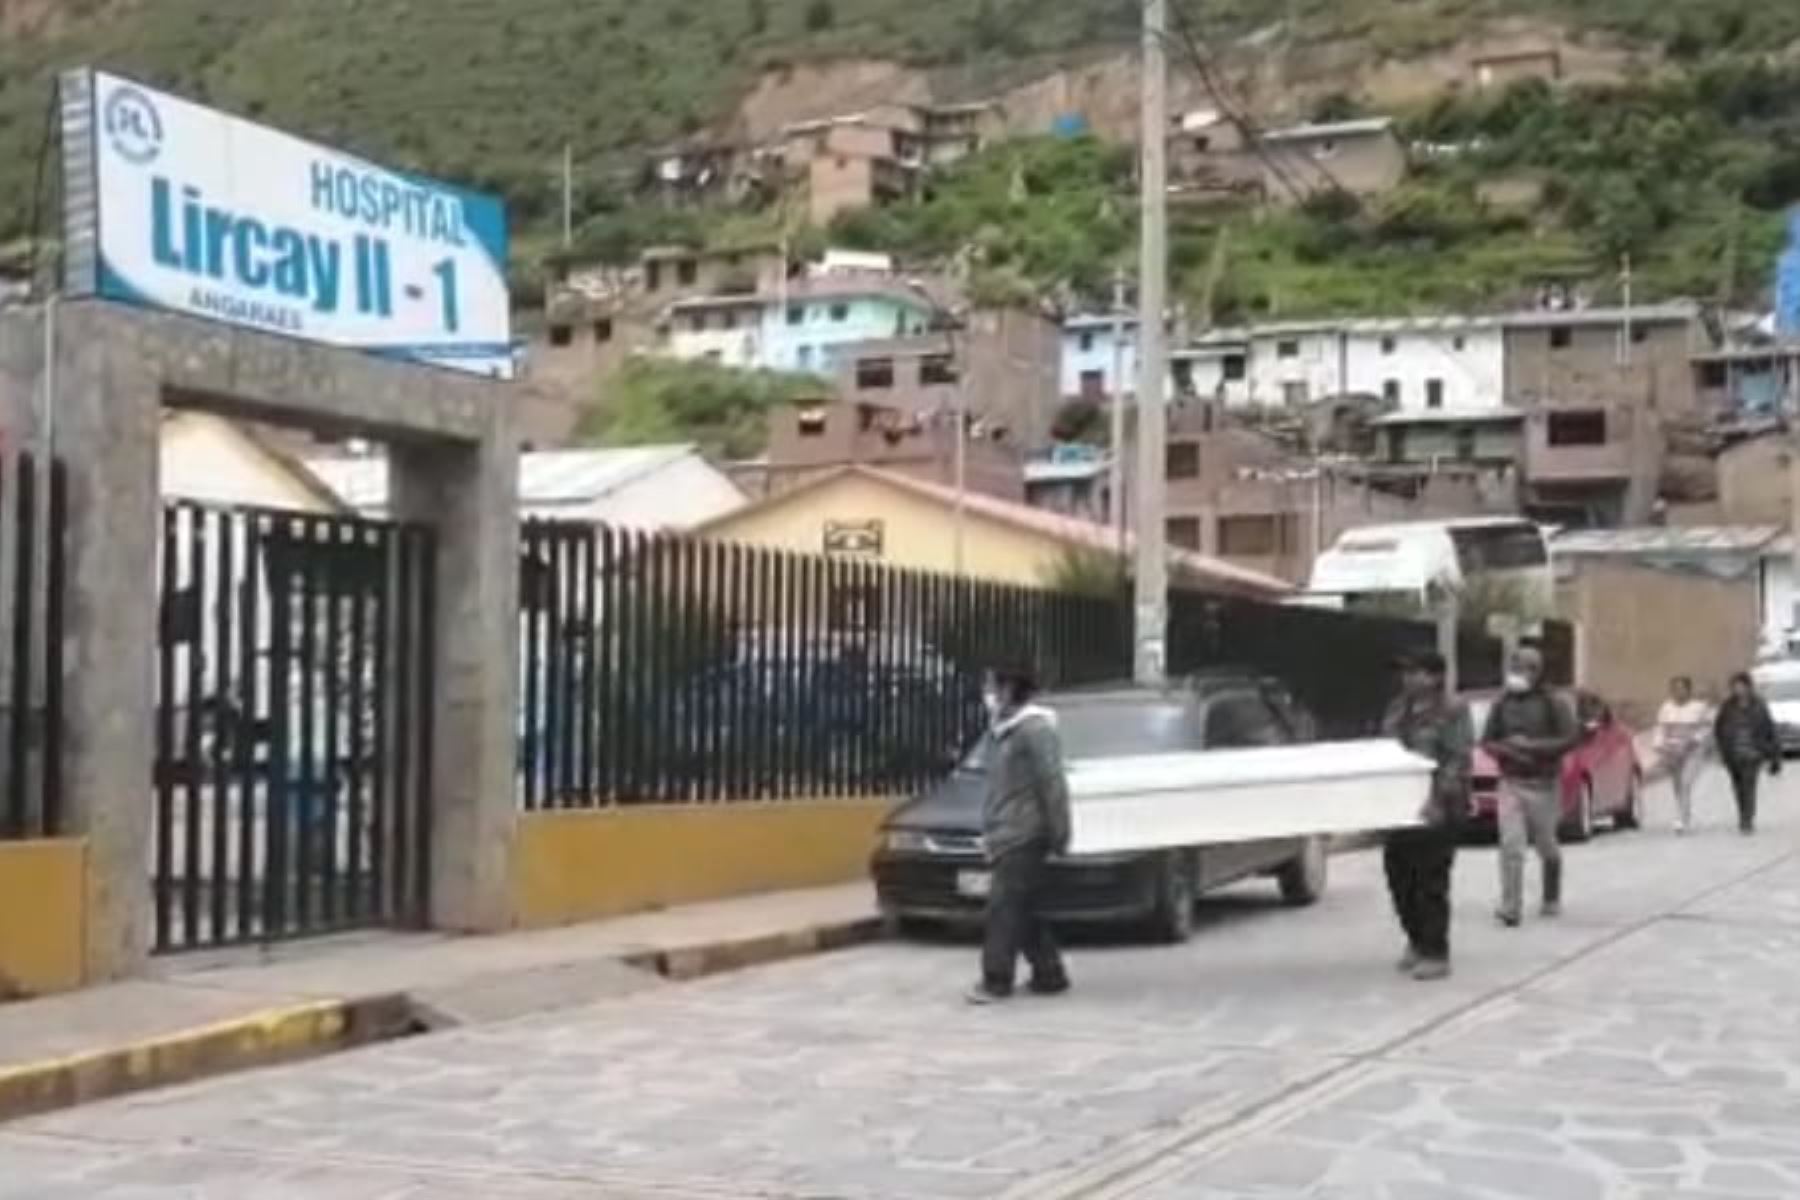 Pobladores afectados por intoxicación alcohólica fueron llevados al hospital de Lircay, en la región Huancavelica. Foto: Cortesía